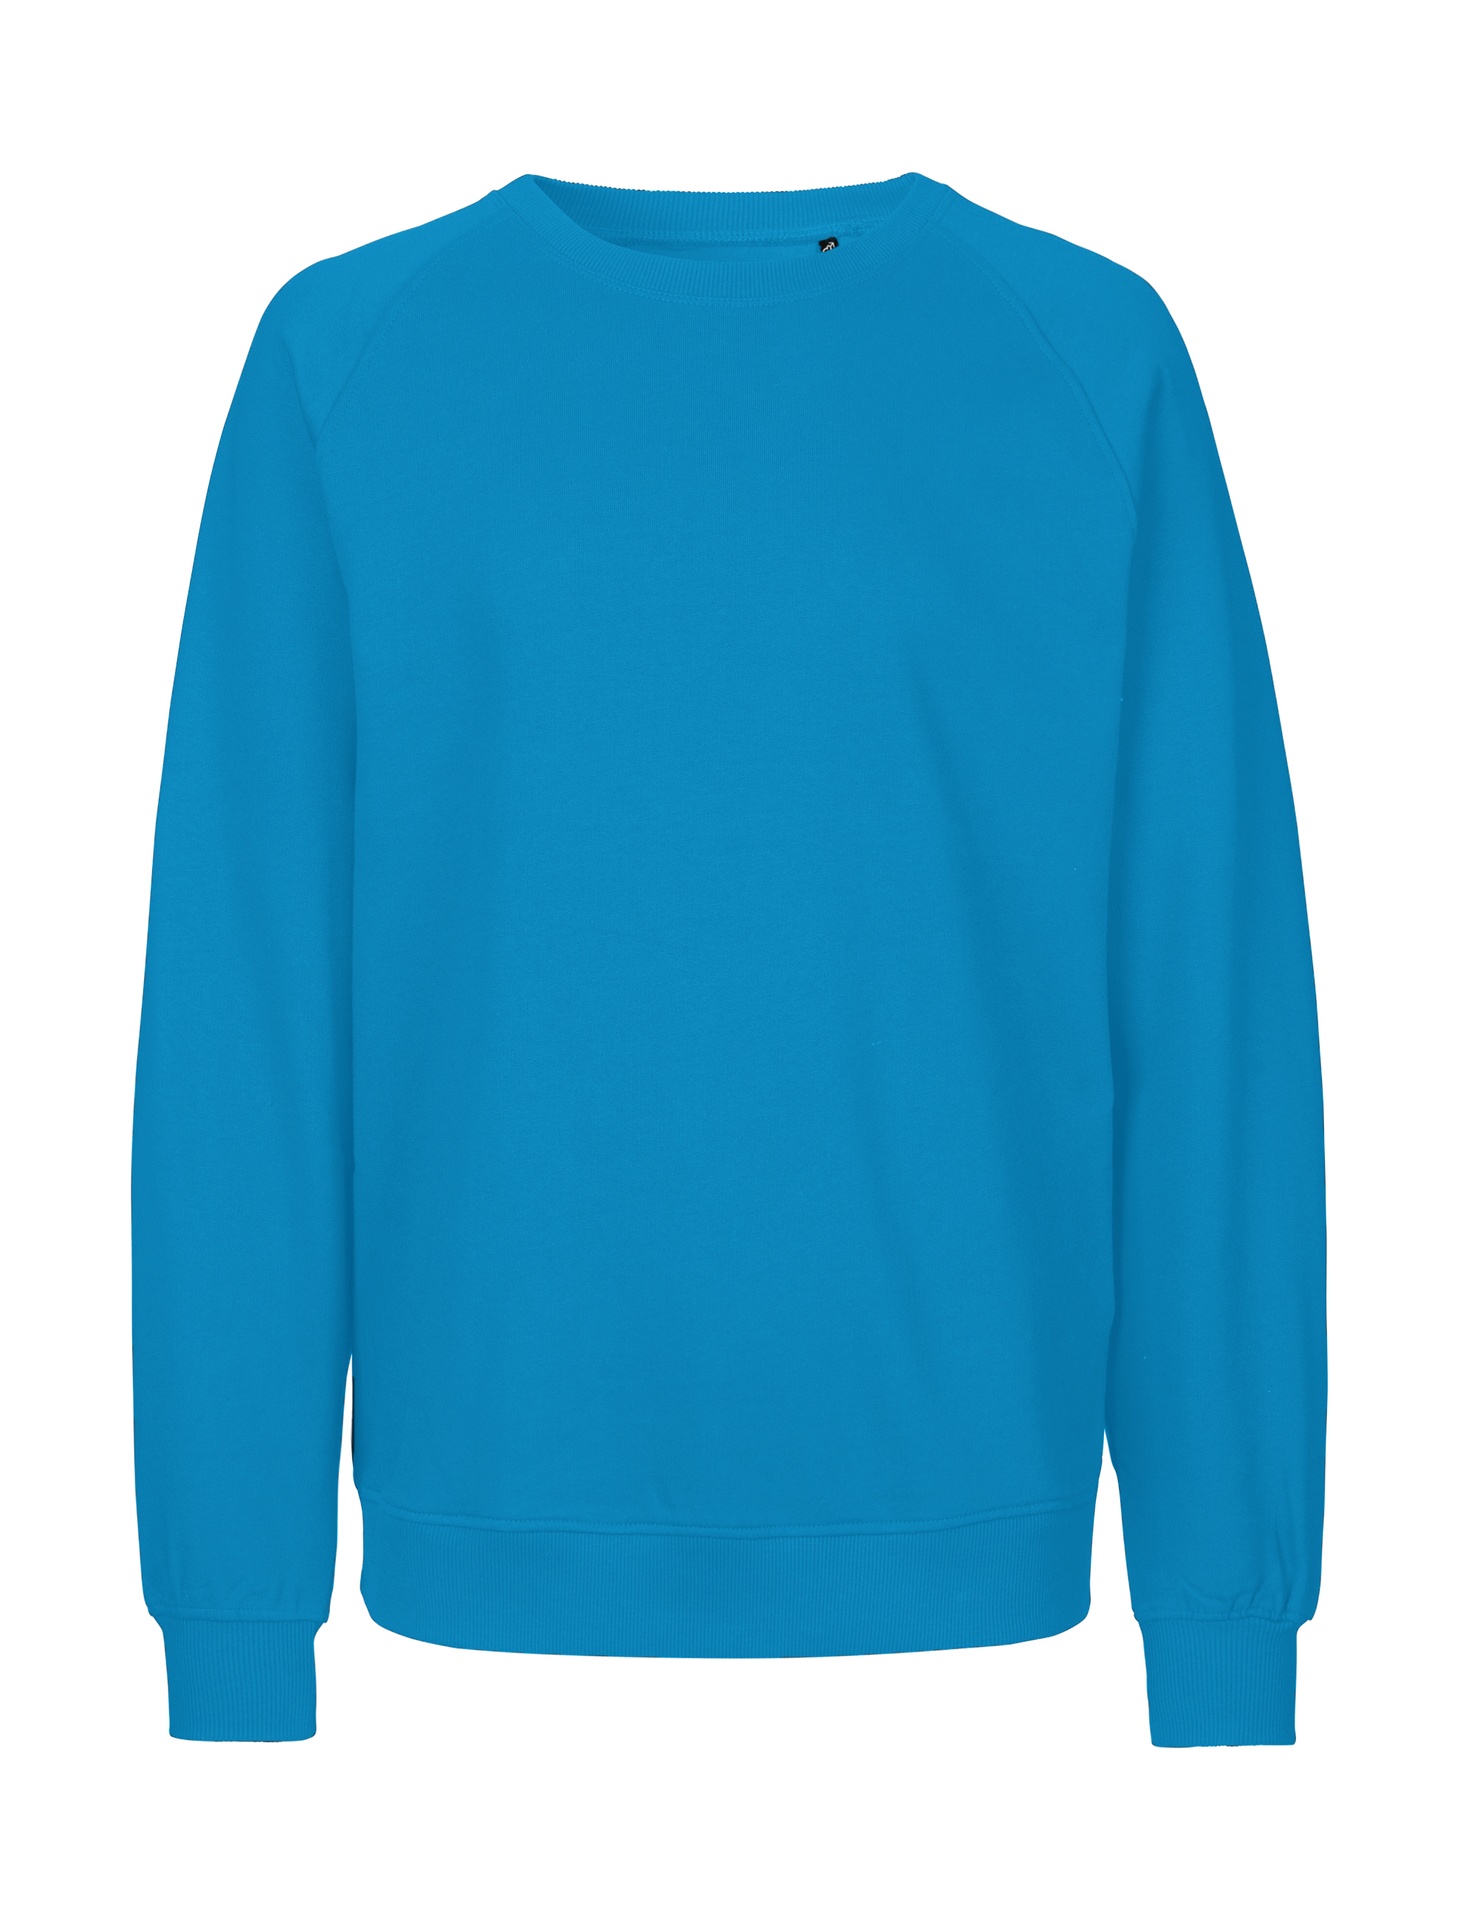 [PR/02775] Unisex Sweatshirt (Sapphire 27, 3XL)